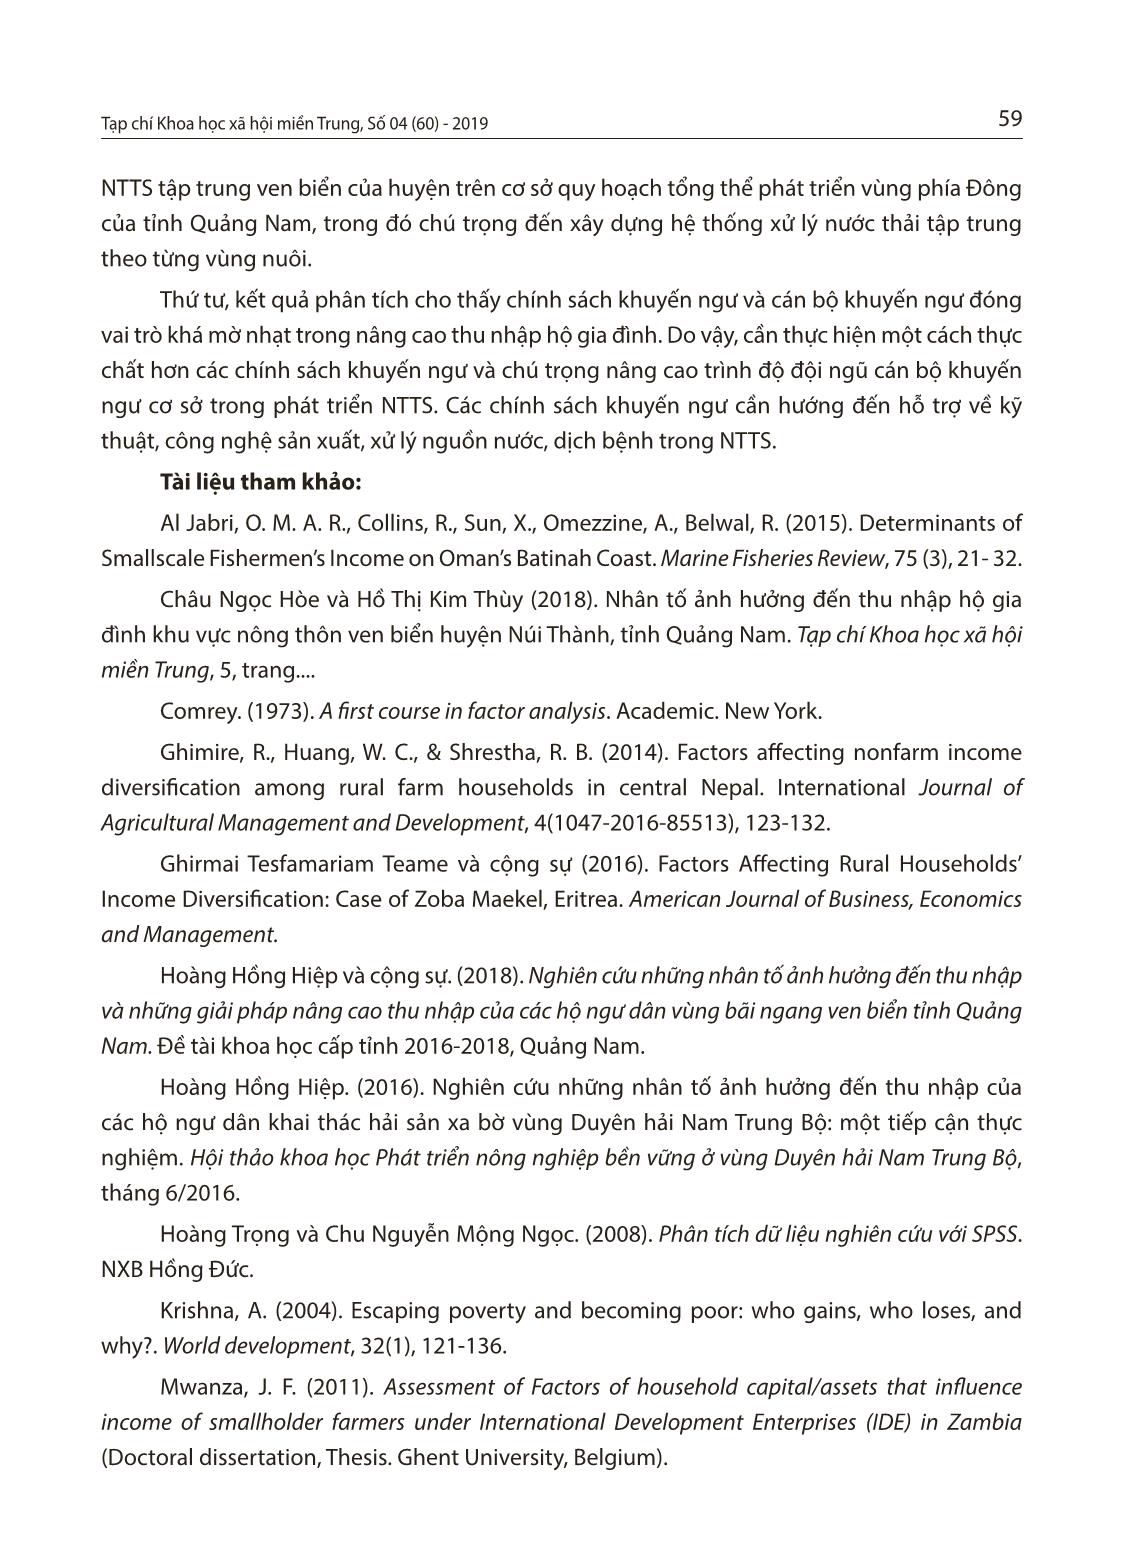 Nhân tố ảnh hưởng đến thu nhập hộ gia đình nuôi trồng thủy sản ven biển huyện Thăng Bình, tỉnh Quảng Nam trang 10